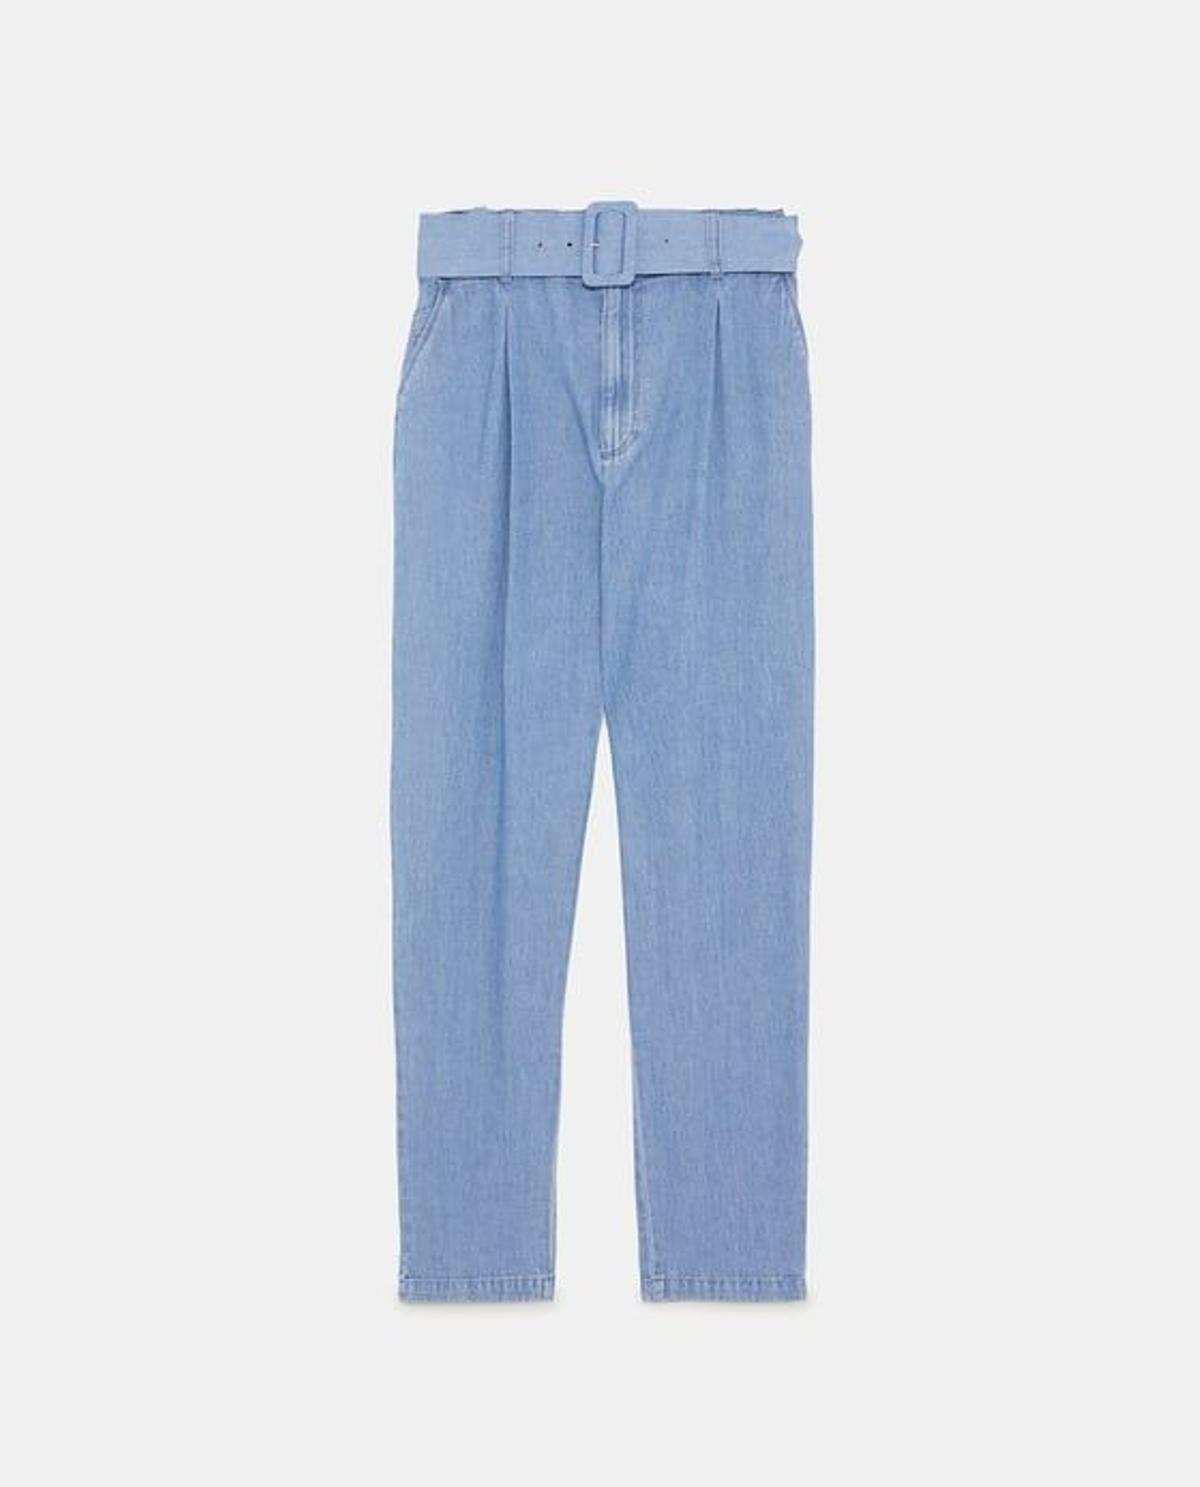 Pantalón de talle alto azul de Zara (Precio: 29,95 euros)